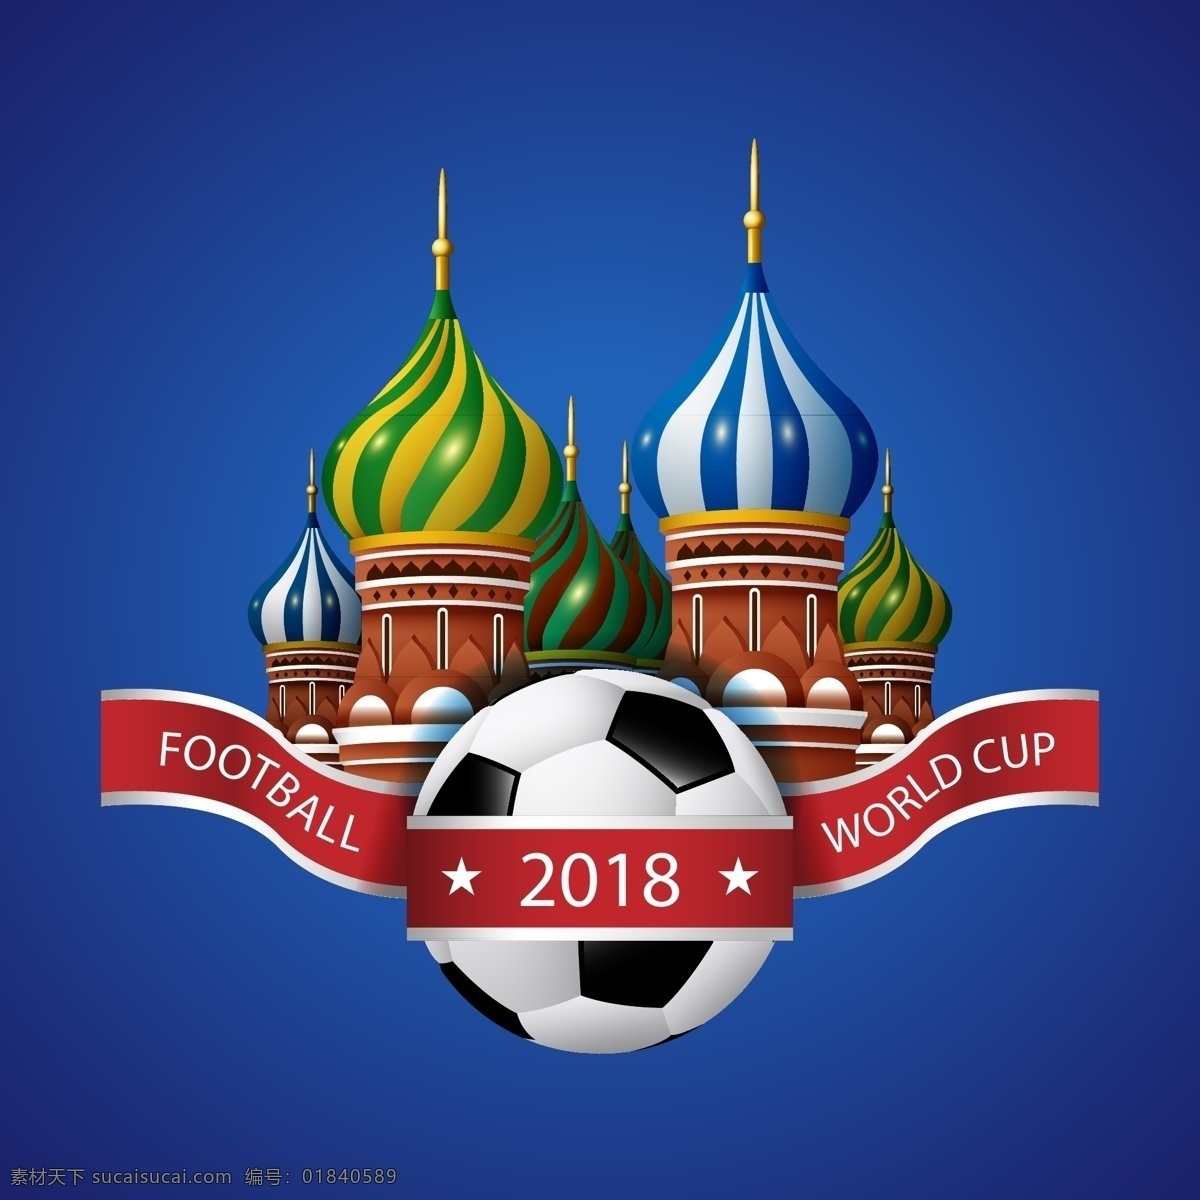 矢量 世界杯 建筑 足球赛 元素 矢量素材 足球 卡通 俄罗斯 欧洲杯 比赛 2018